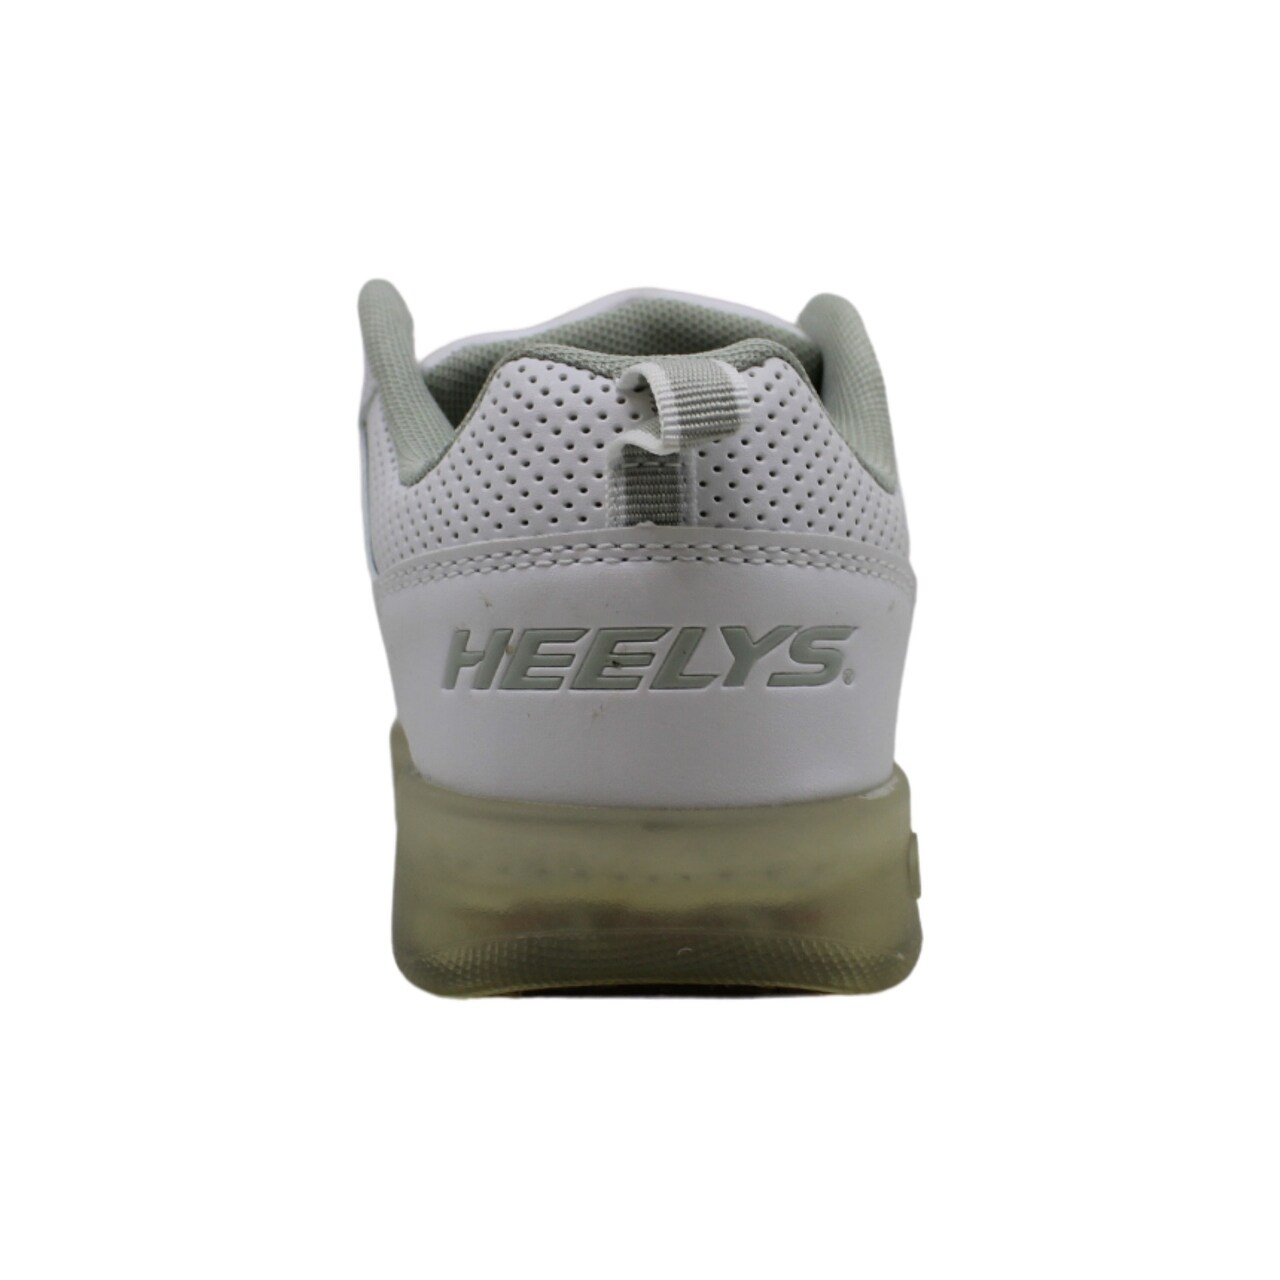 heelys premium 1 lo